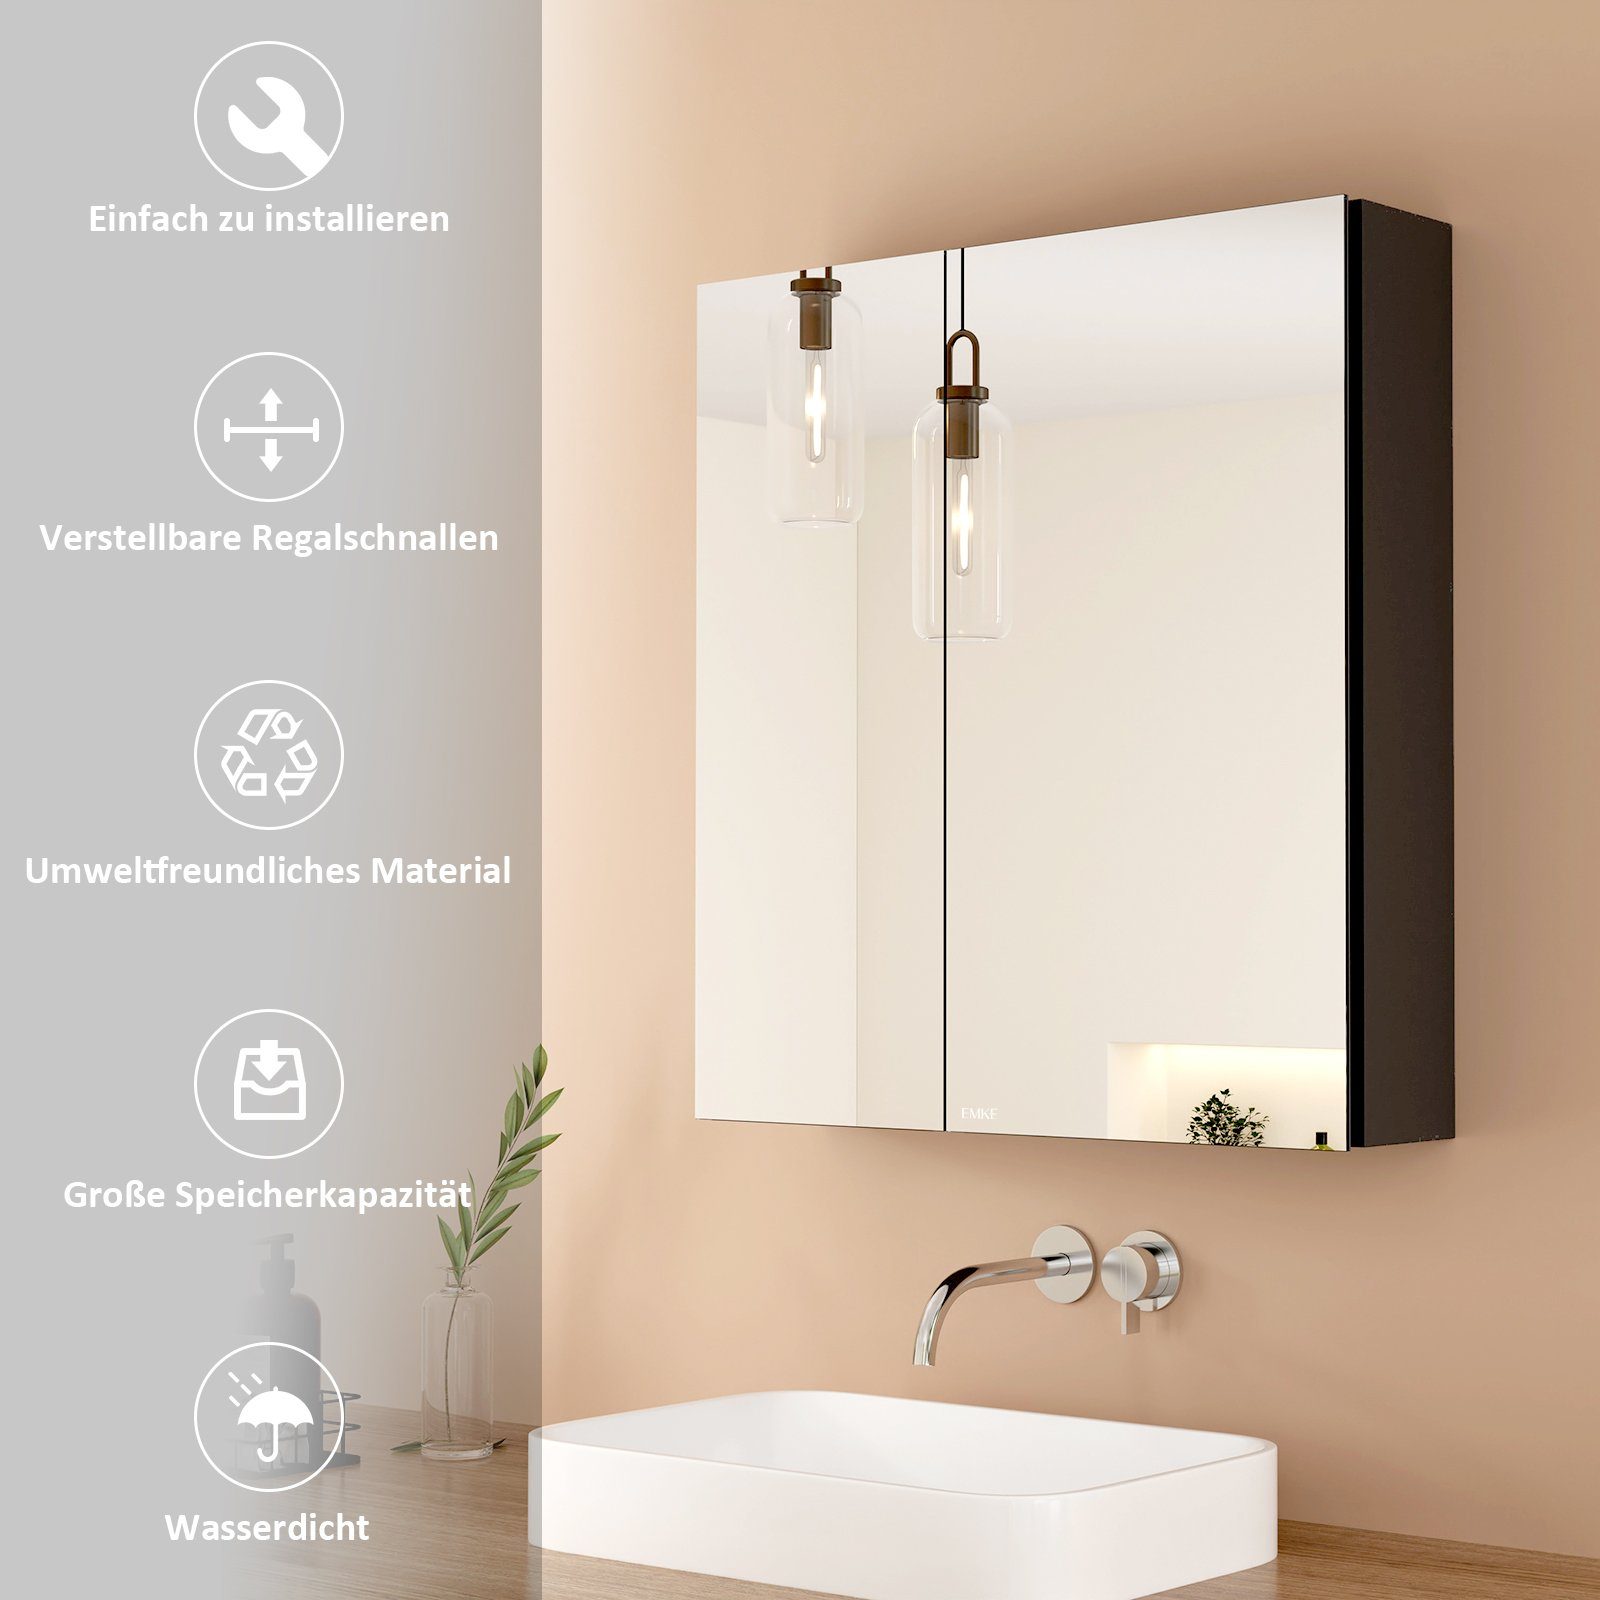 EMKE Spiegelschrank Spiegelschrank Spiegel Trennwand Verstellbare mit 60X65cm Badschrank Doppelseitigem Badezimmer schwarz